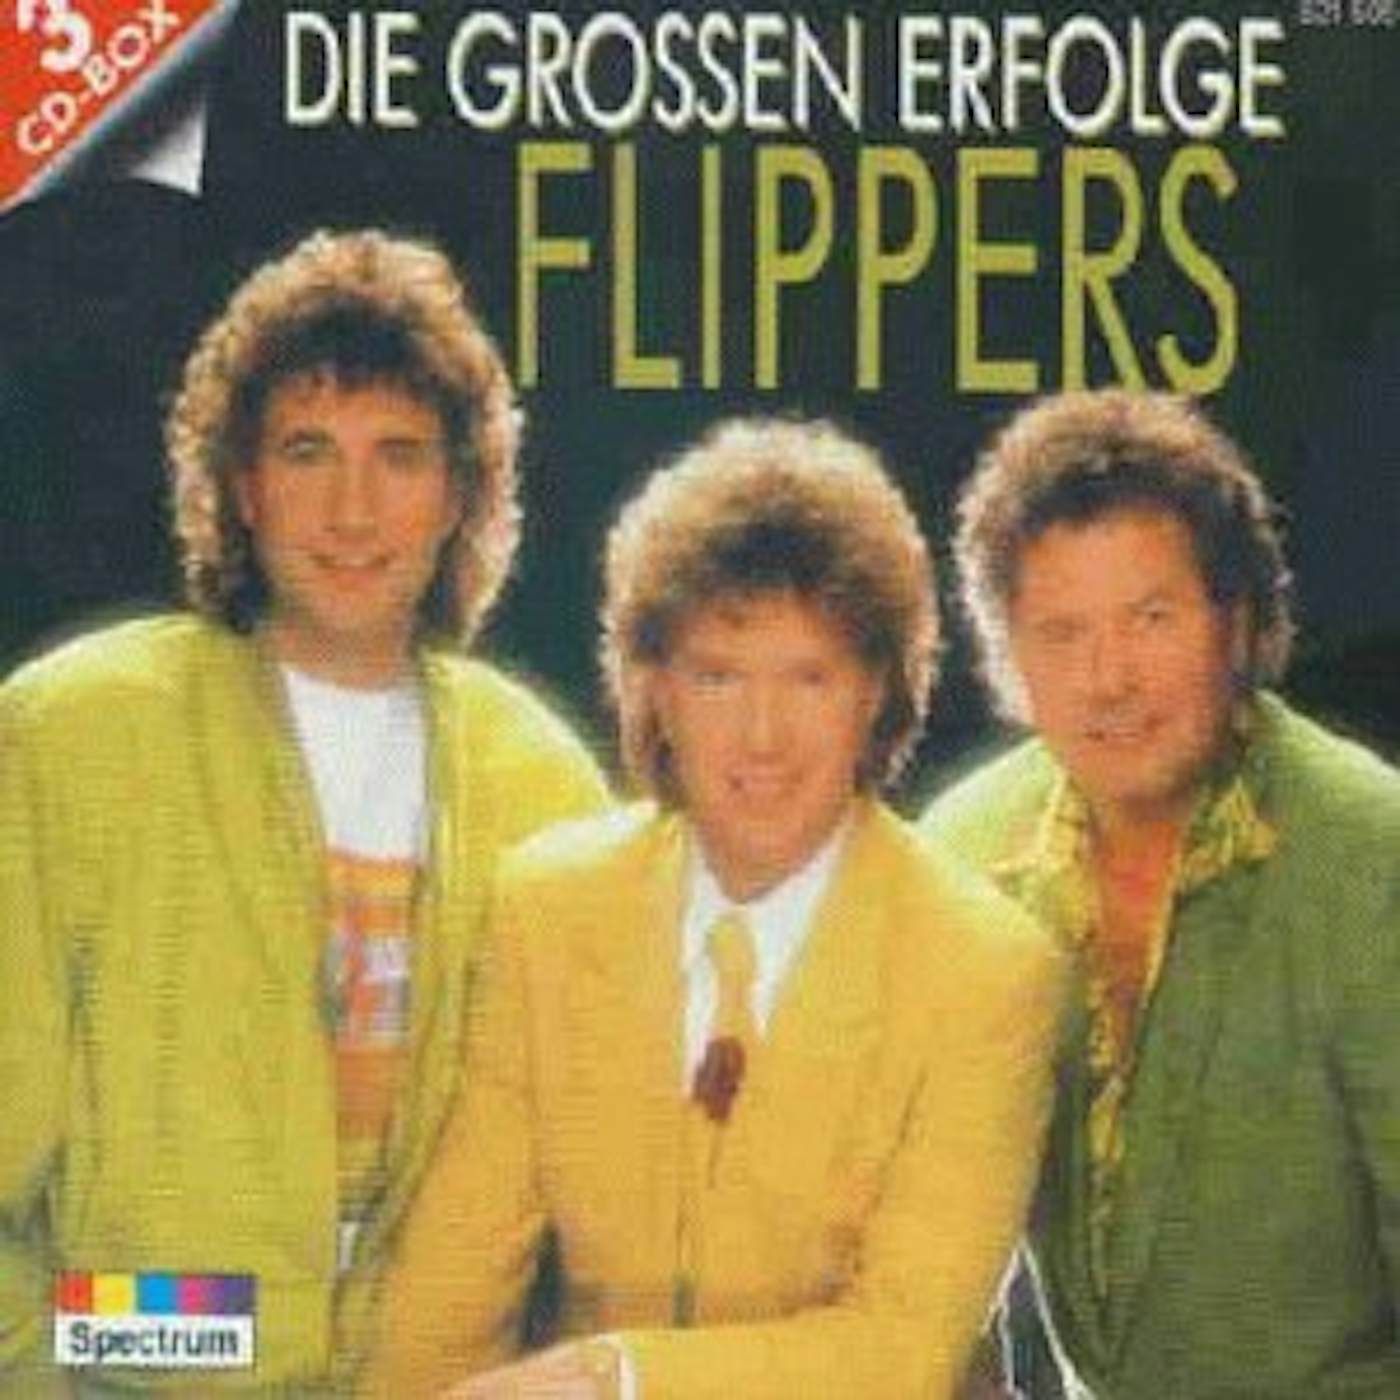 Die Flippers GROSSEN ERFOLGE CD